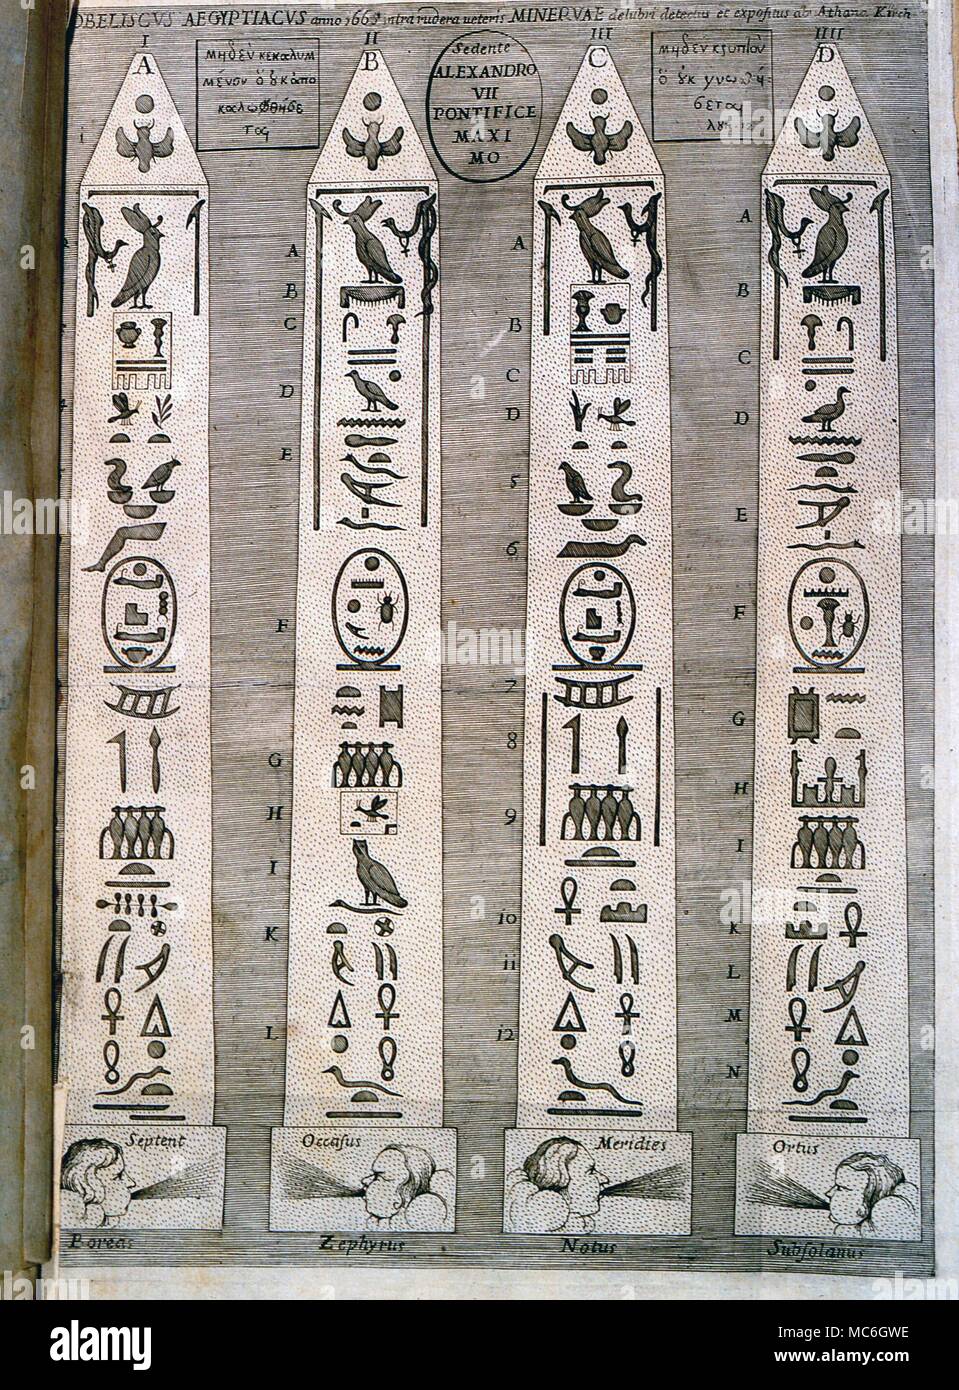 La mythologie égyptienne - les obélisques obélisques égyptien, avec des hiéroglyphes, comme sur l'illustration pour Athansius Mystagoga du Sphinx Kircher, Siva Hieroglyphicaa Mumiis de diatribe, de 1678 Banque D'Images